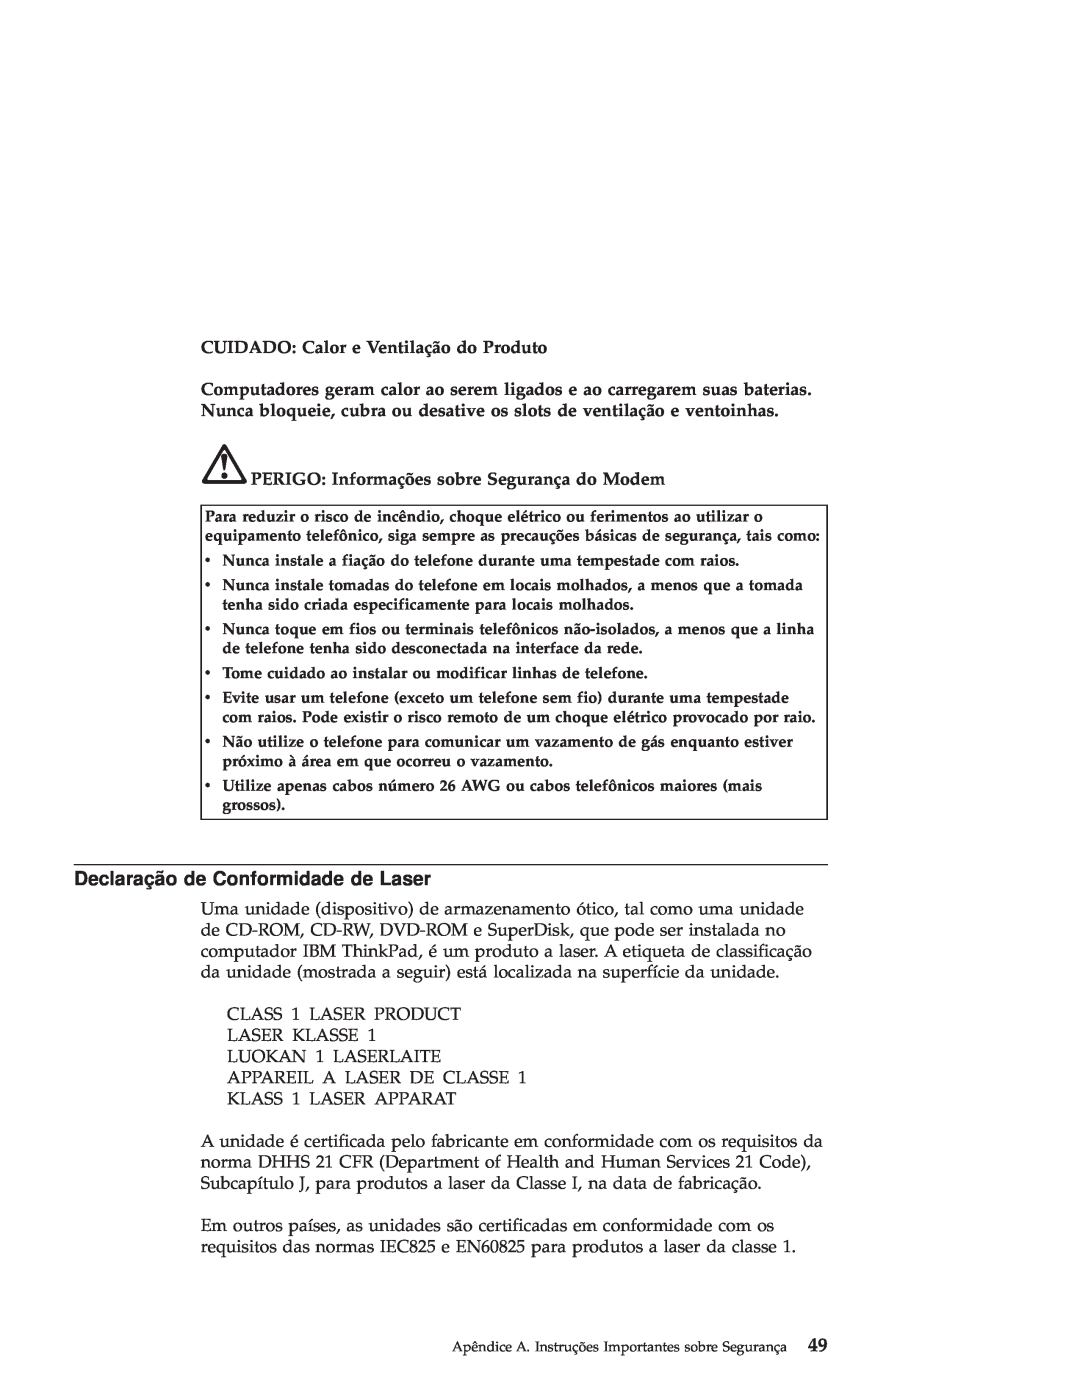 IBM R50 manual Declaração de Conformidade de Laser, CUIDADO: Calor e Ventilação do Produto 